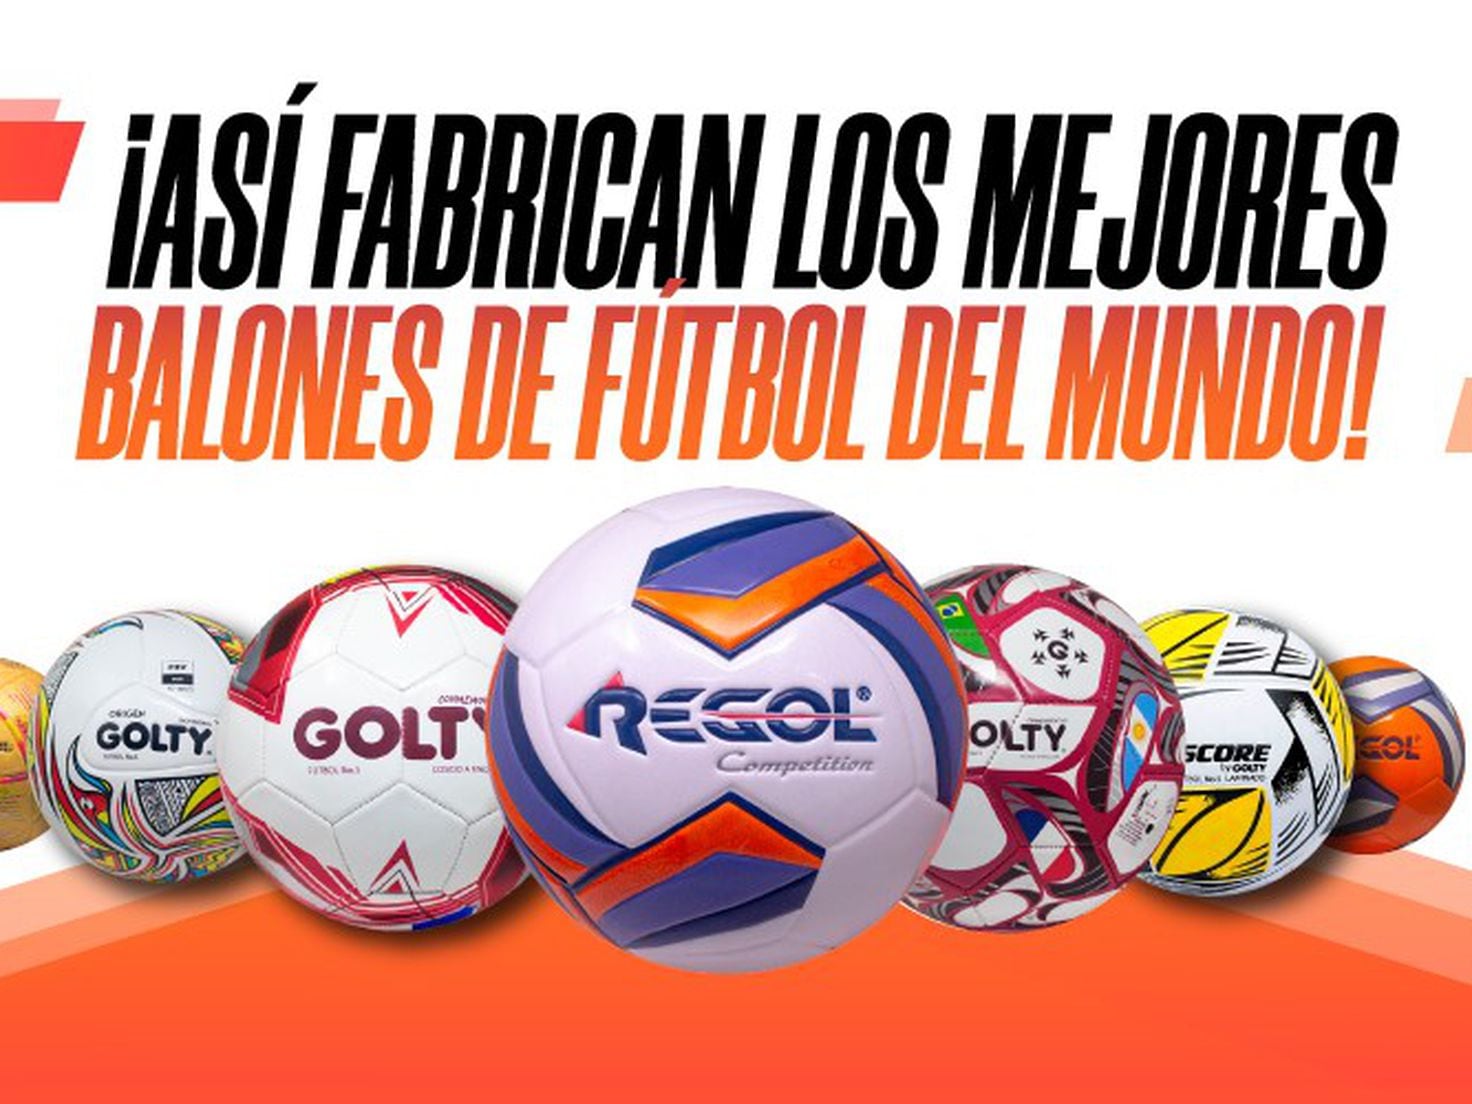 Dónde se fabrican los mejores balones del mundo y de Colombia